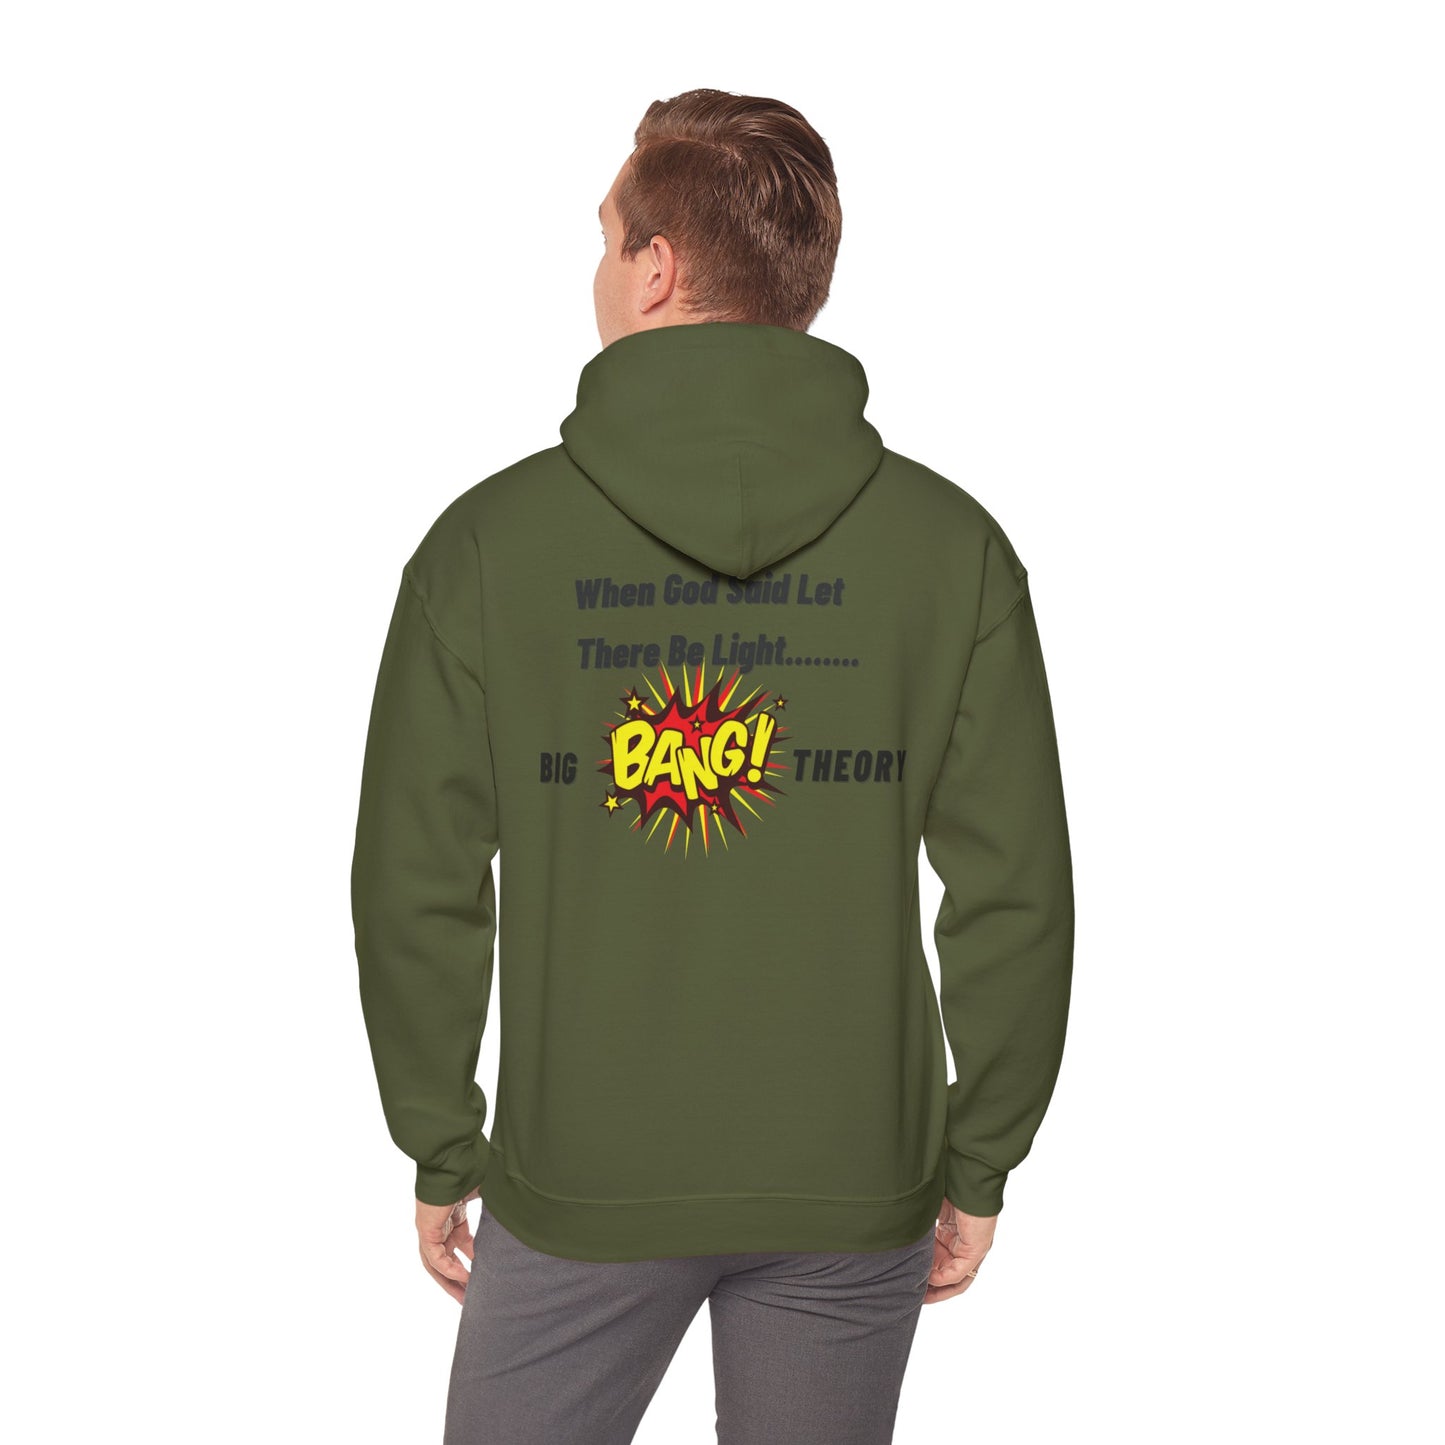 Ableiva - Big Bang Theory - Unisex Hooded Sweatshirt